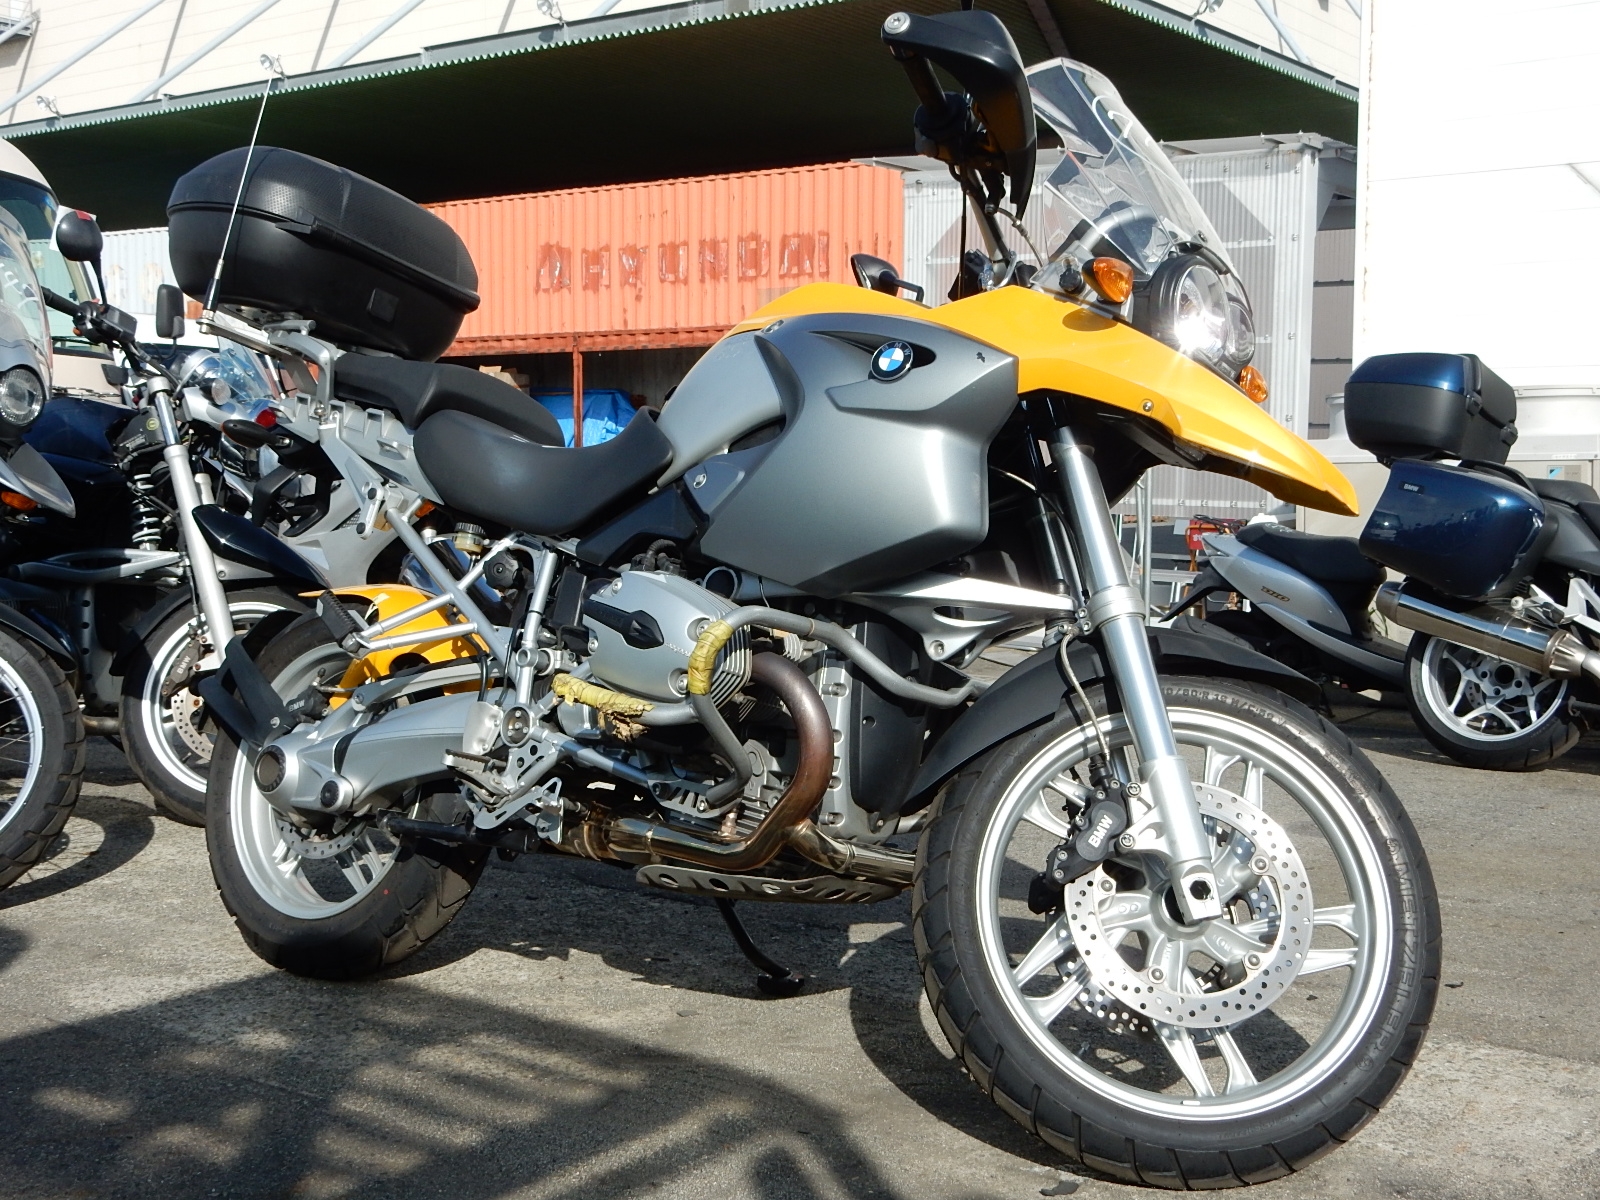 BMW GS 400. 1. R 1200 GS мотоцикла. Yamaha TDM И BMW gs1200. Мотоциклы БМВ бу. Мотоциклы в новосибирске б у